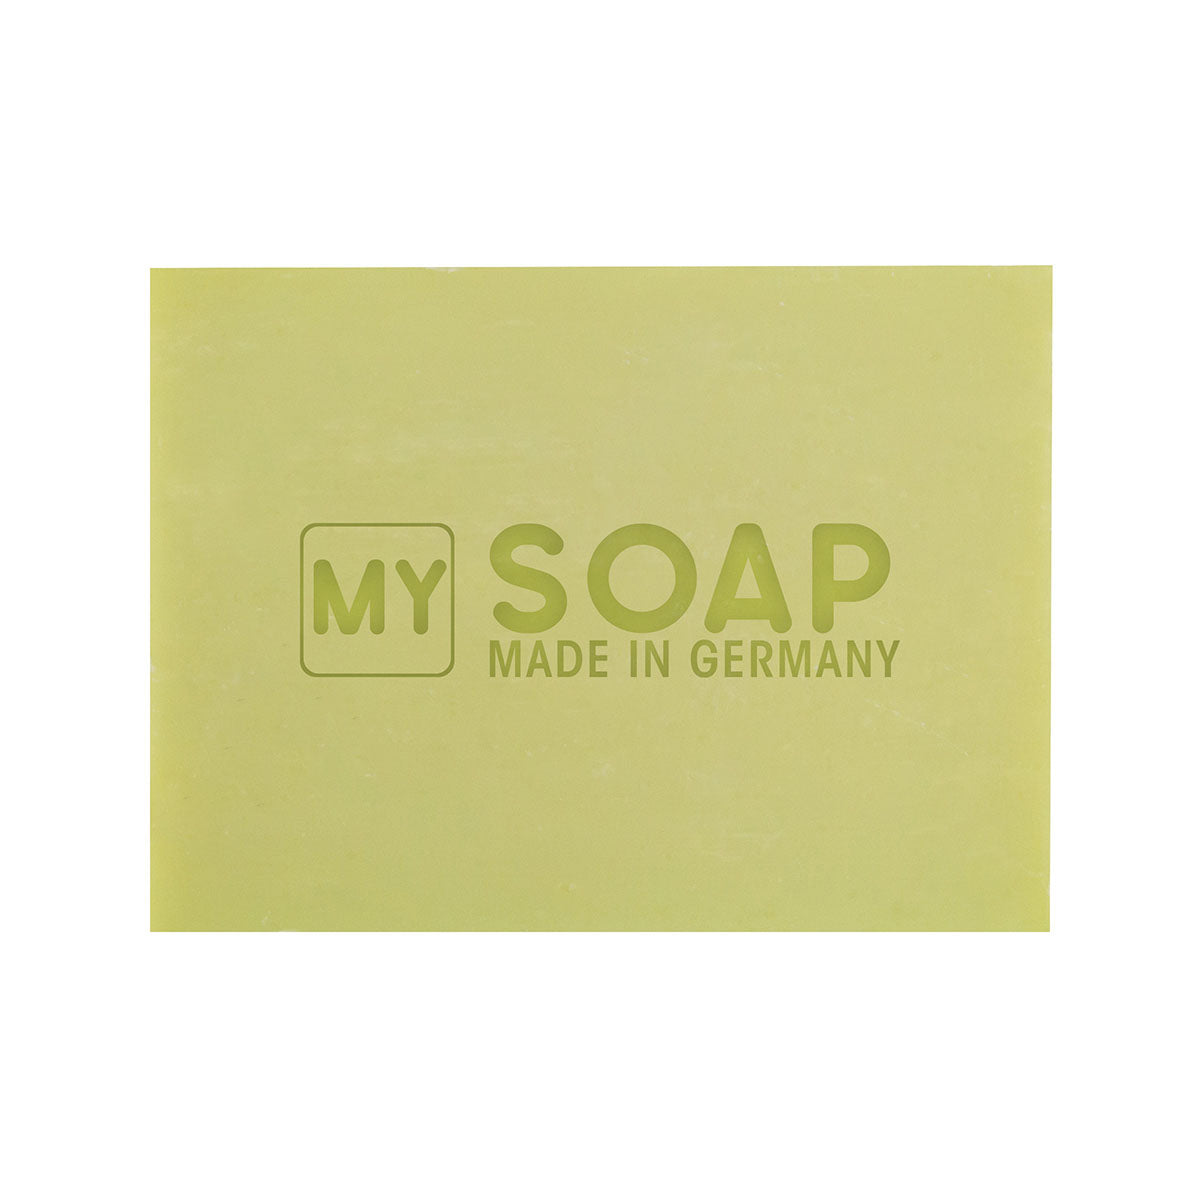 MY SOAP Handgefertigte Schafmilchseife in Papierschachtel, Eisenkraut